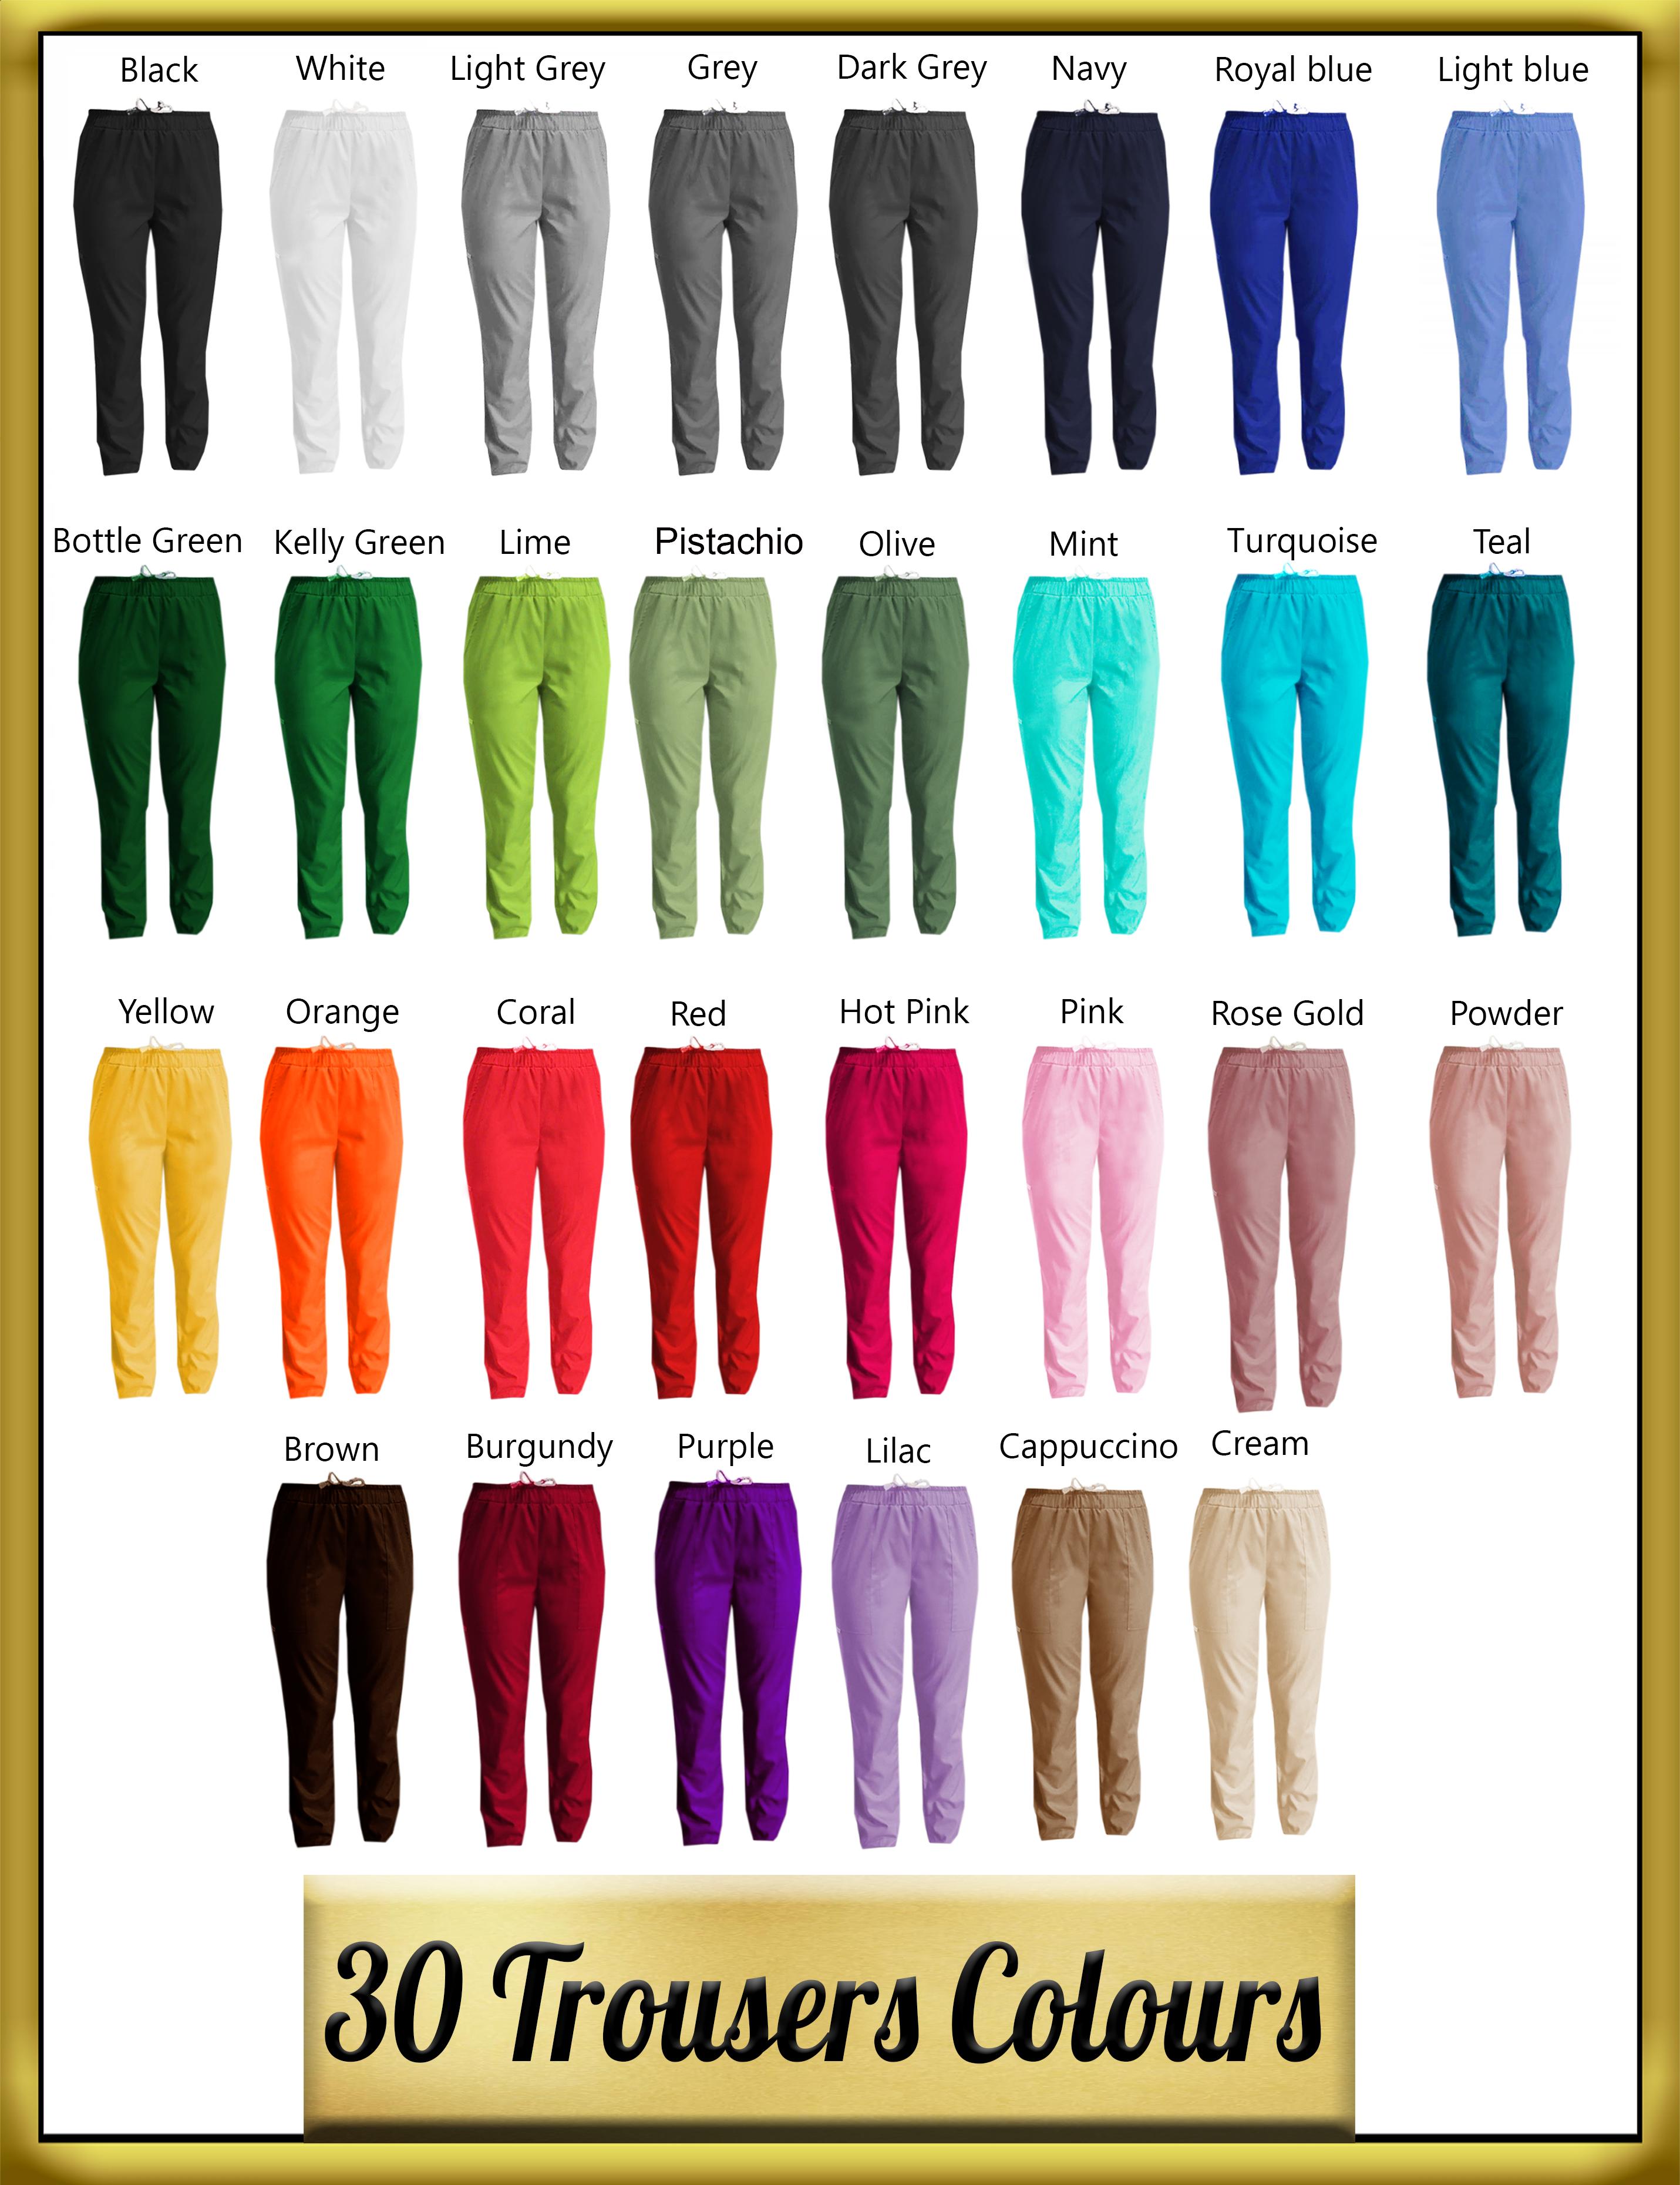 Women's chef's trouser colours